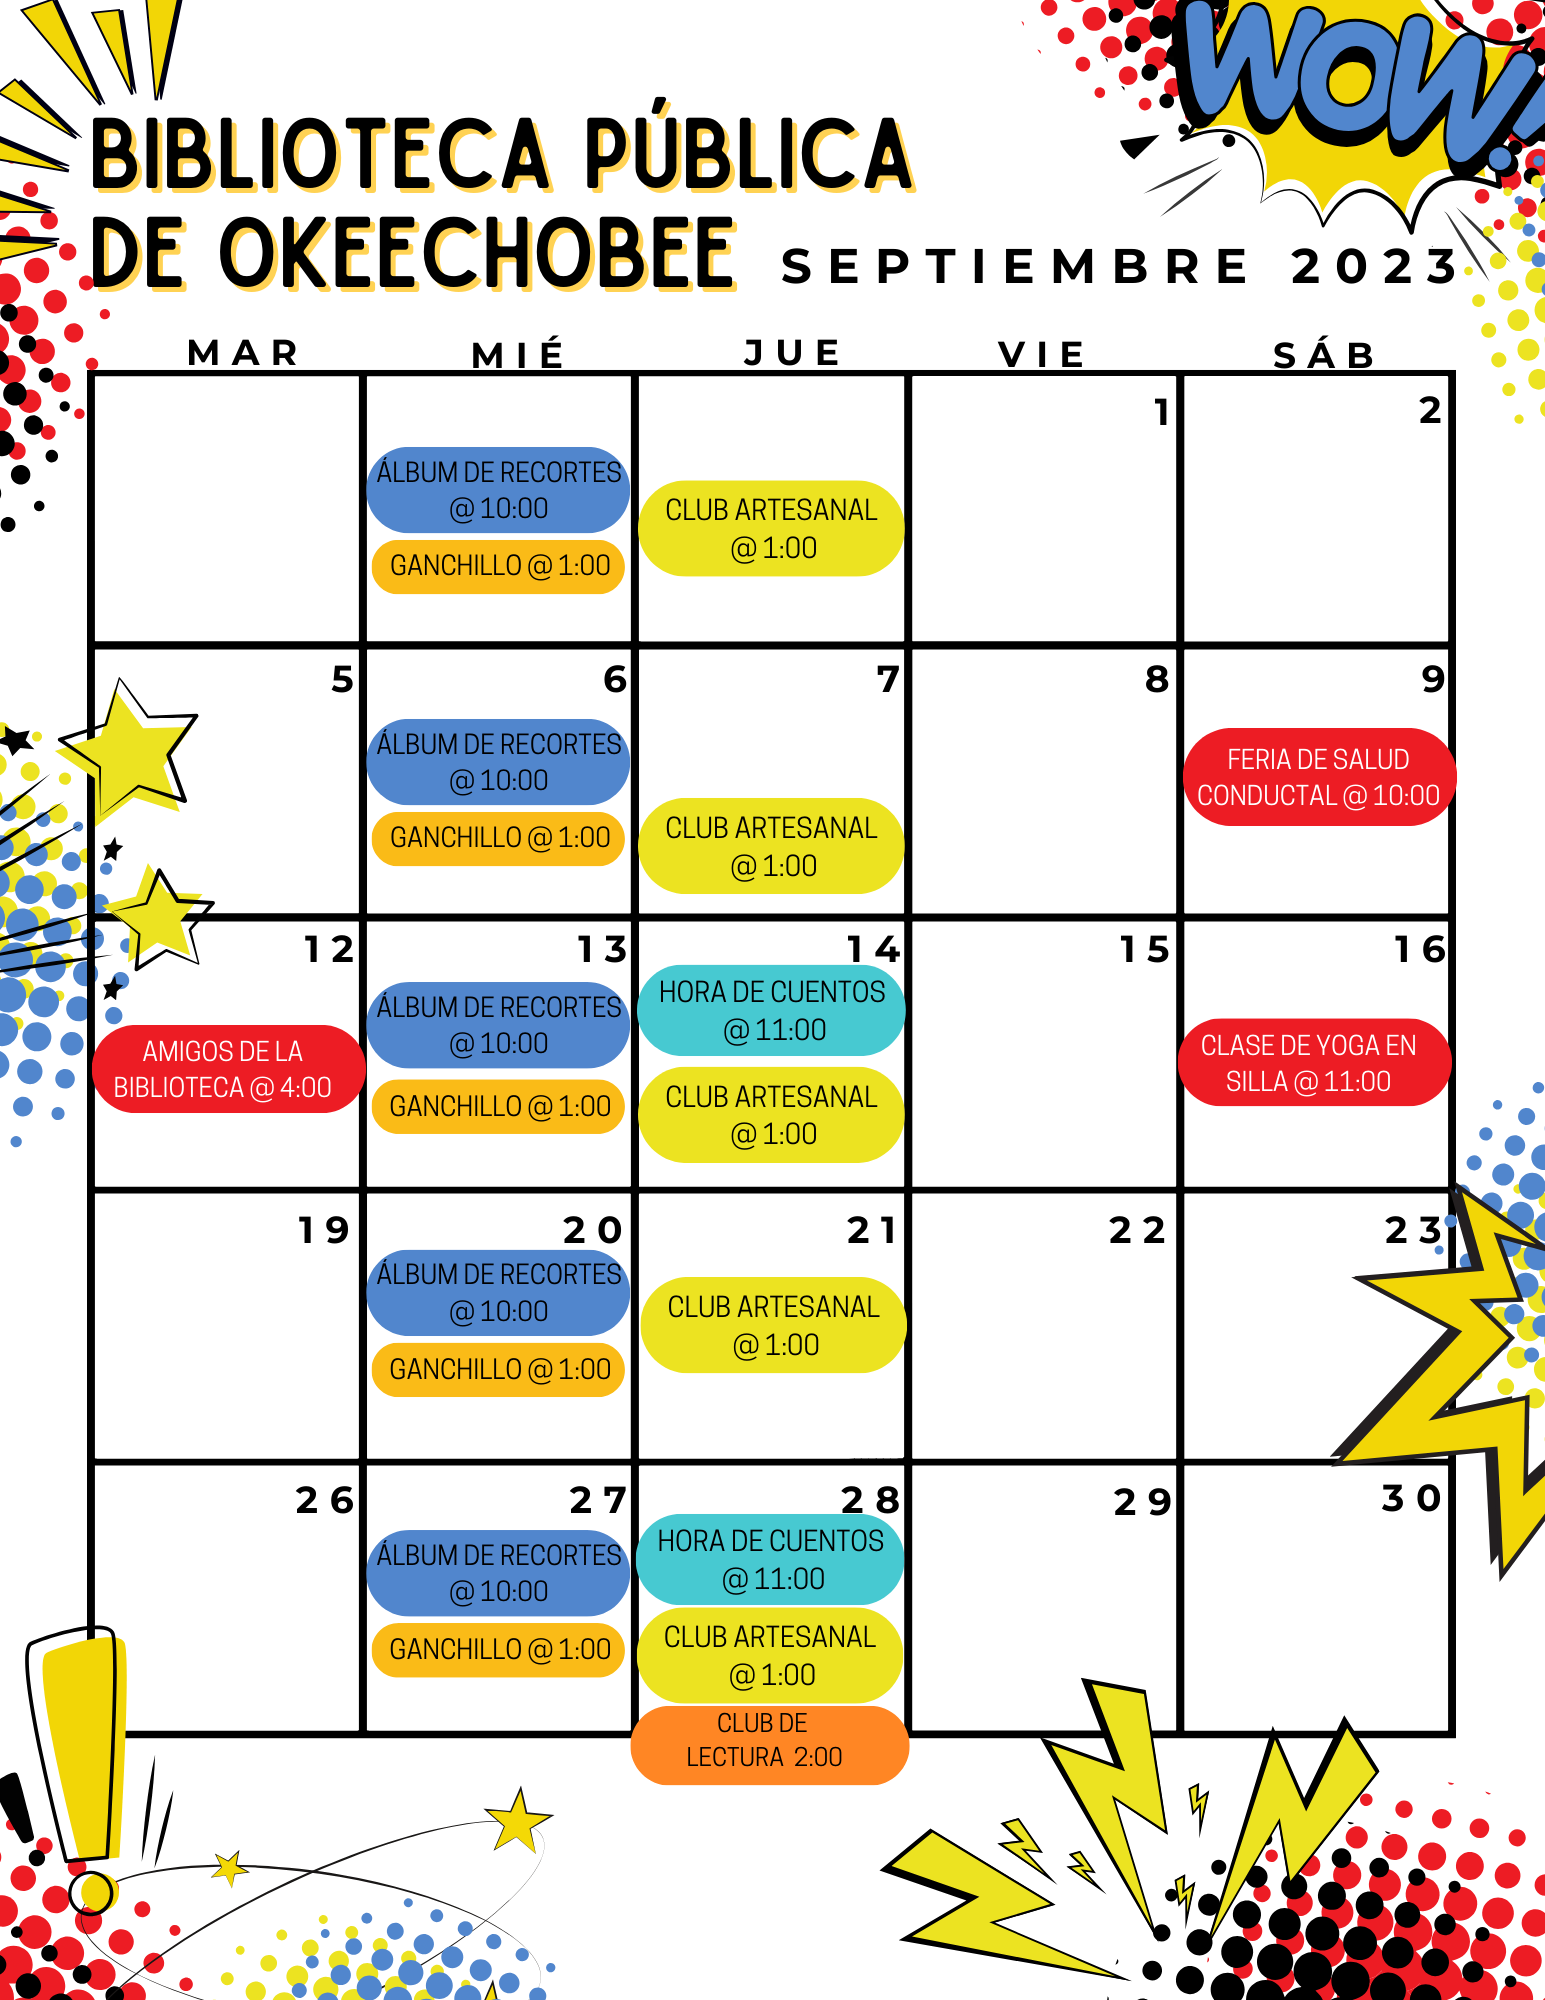 ¡Consulte nuestro calendario de eventos de la Biblioteca del Condado de Okeechobee para Septiembre! Para obtener más información, consulte nuestro boletín de Septiembre o llámenos al 863-763-3536